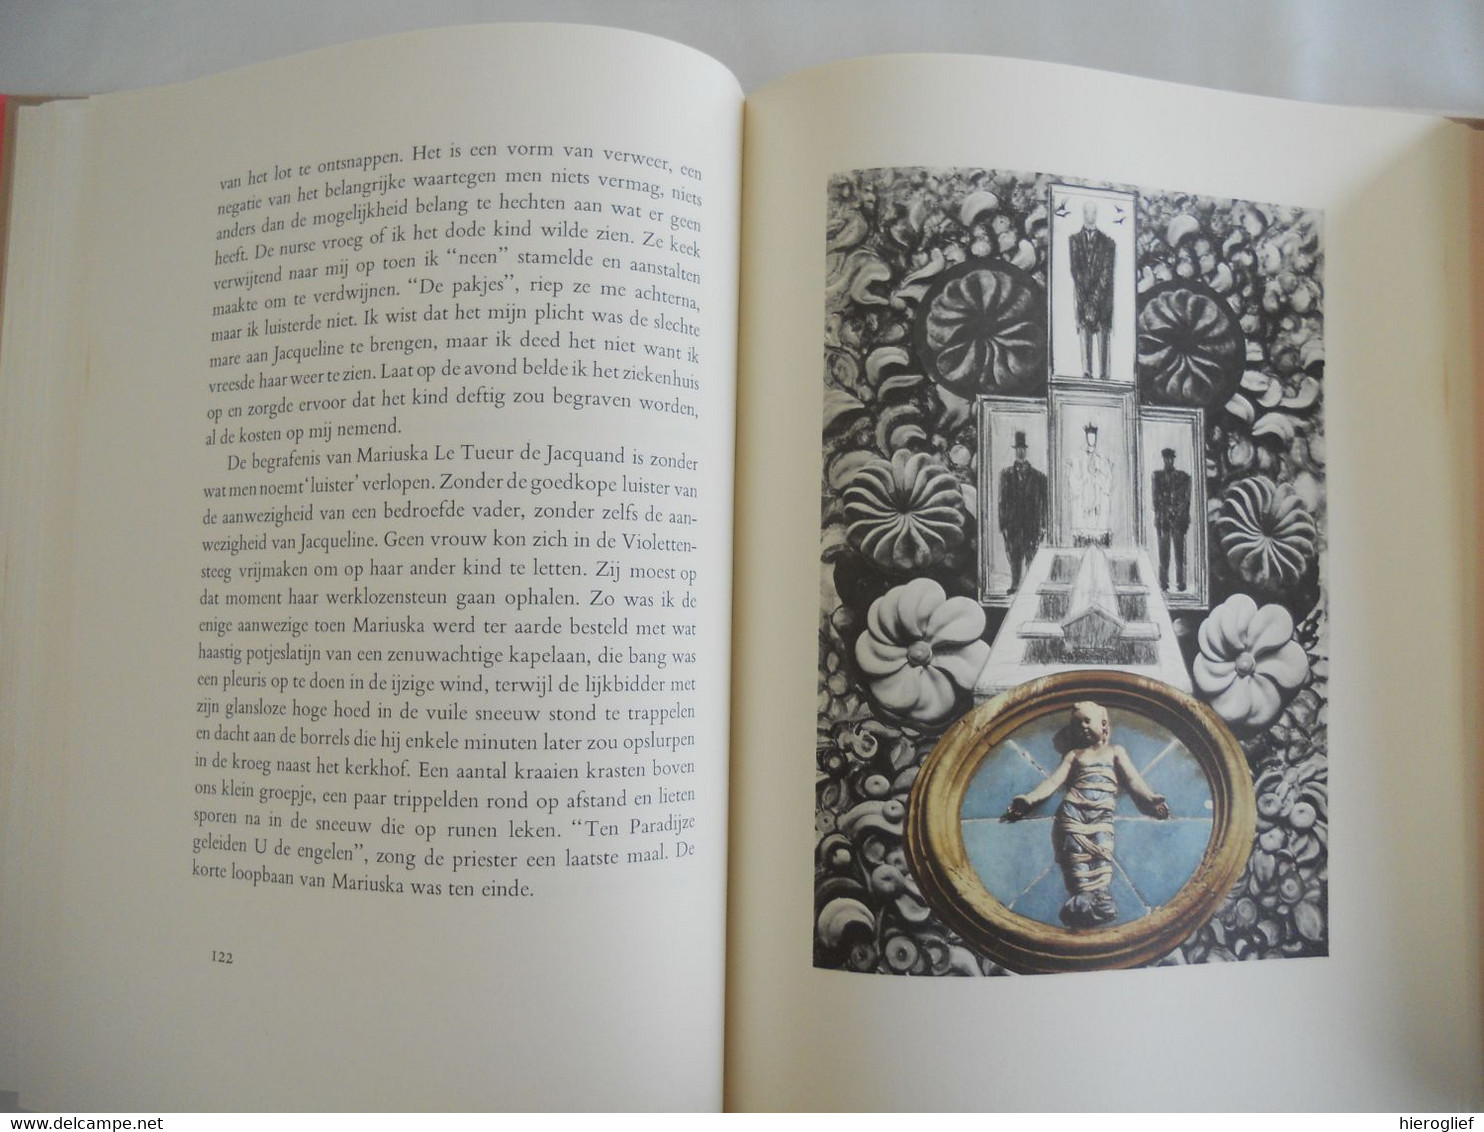 JACQUELINE EN IK roman door Marnix Gijsen illustraties Marcel Mayer 1970 Mercatorfonds ° Antwerpen + Lubbeek Jan A Goris